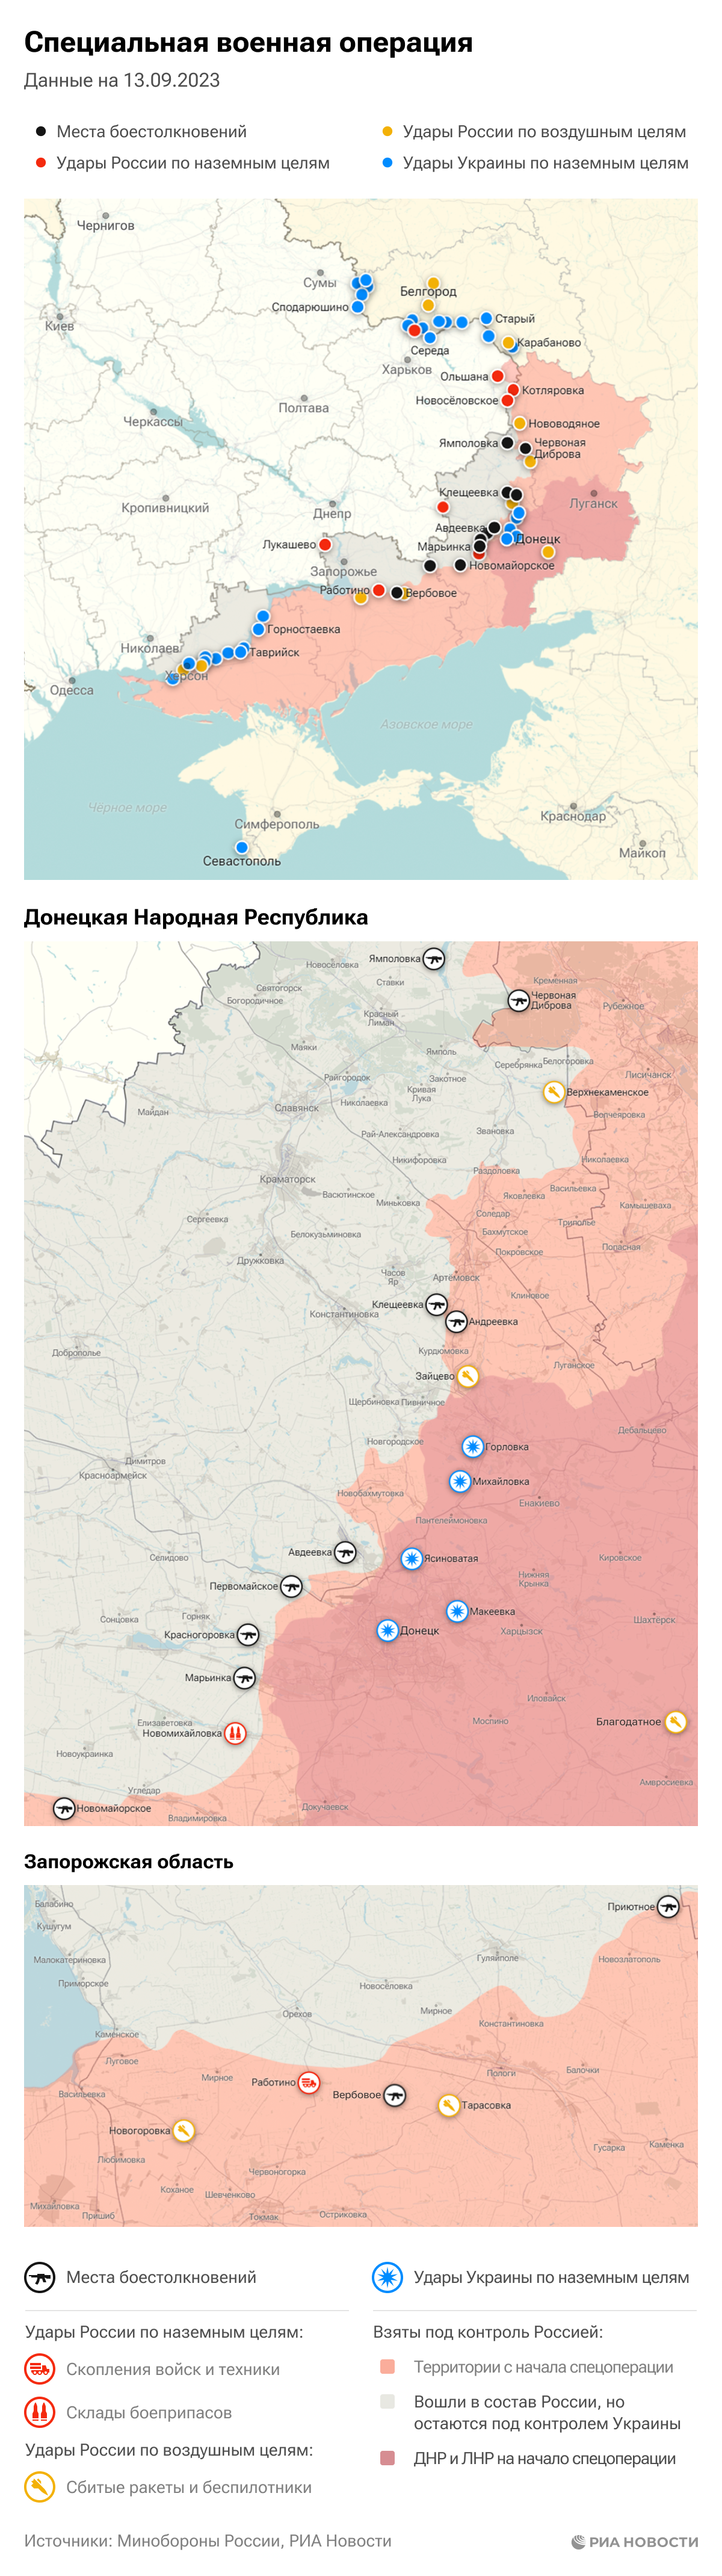 Карта спецоперации Вооруженных сил России на Украине на 13.09.2023